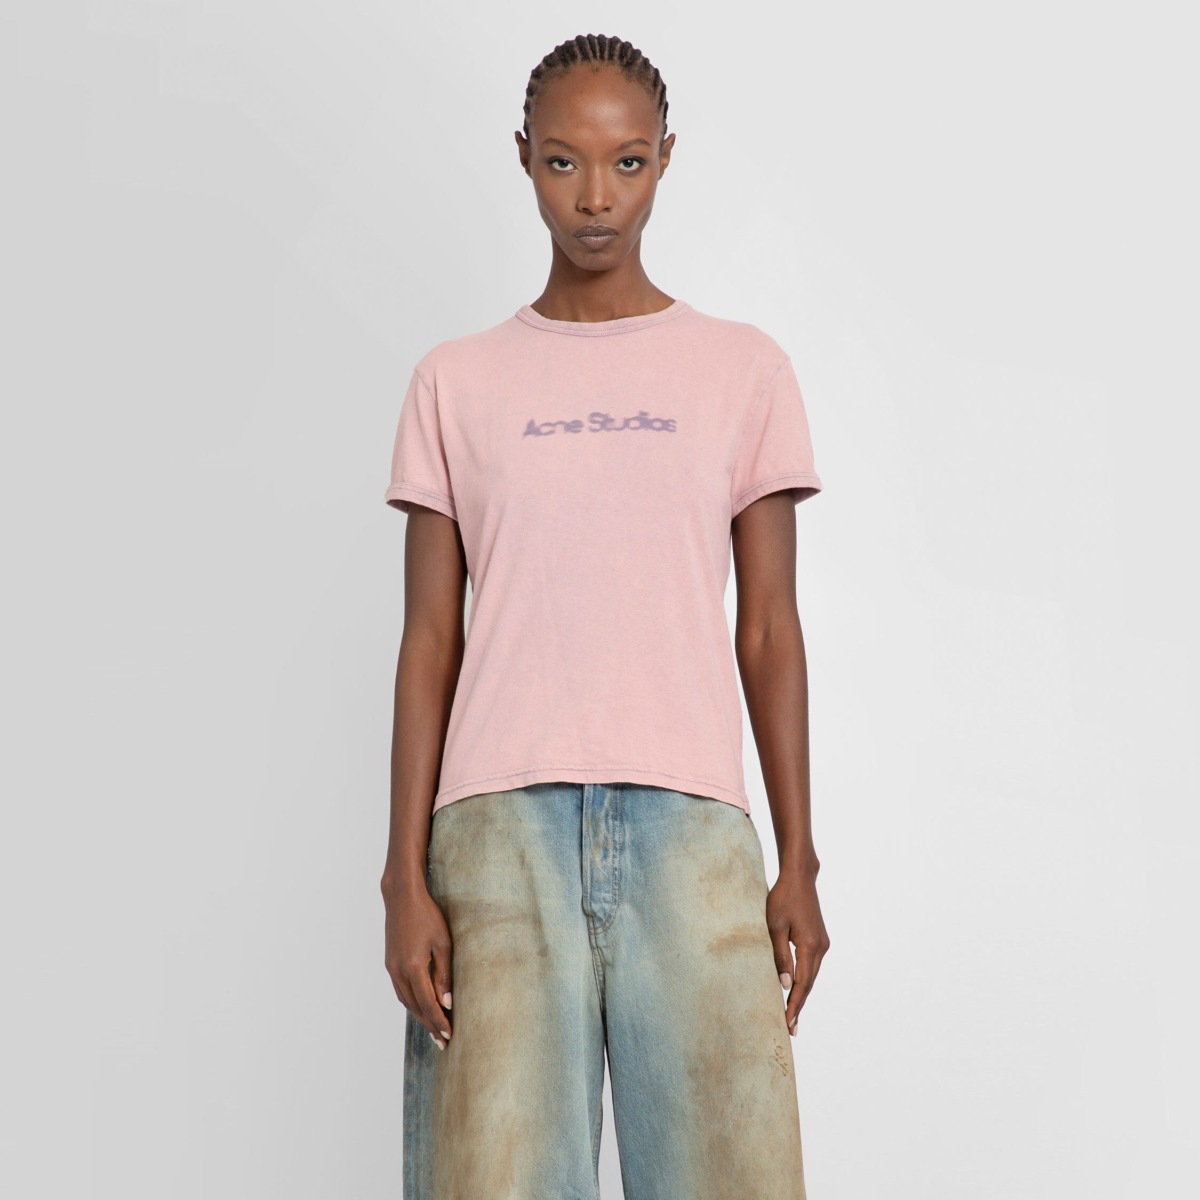 Antonioli T-Shirt Pink Acne Studios GOOFASH